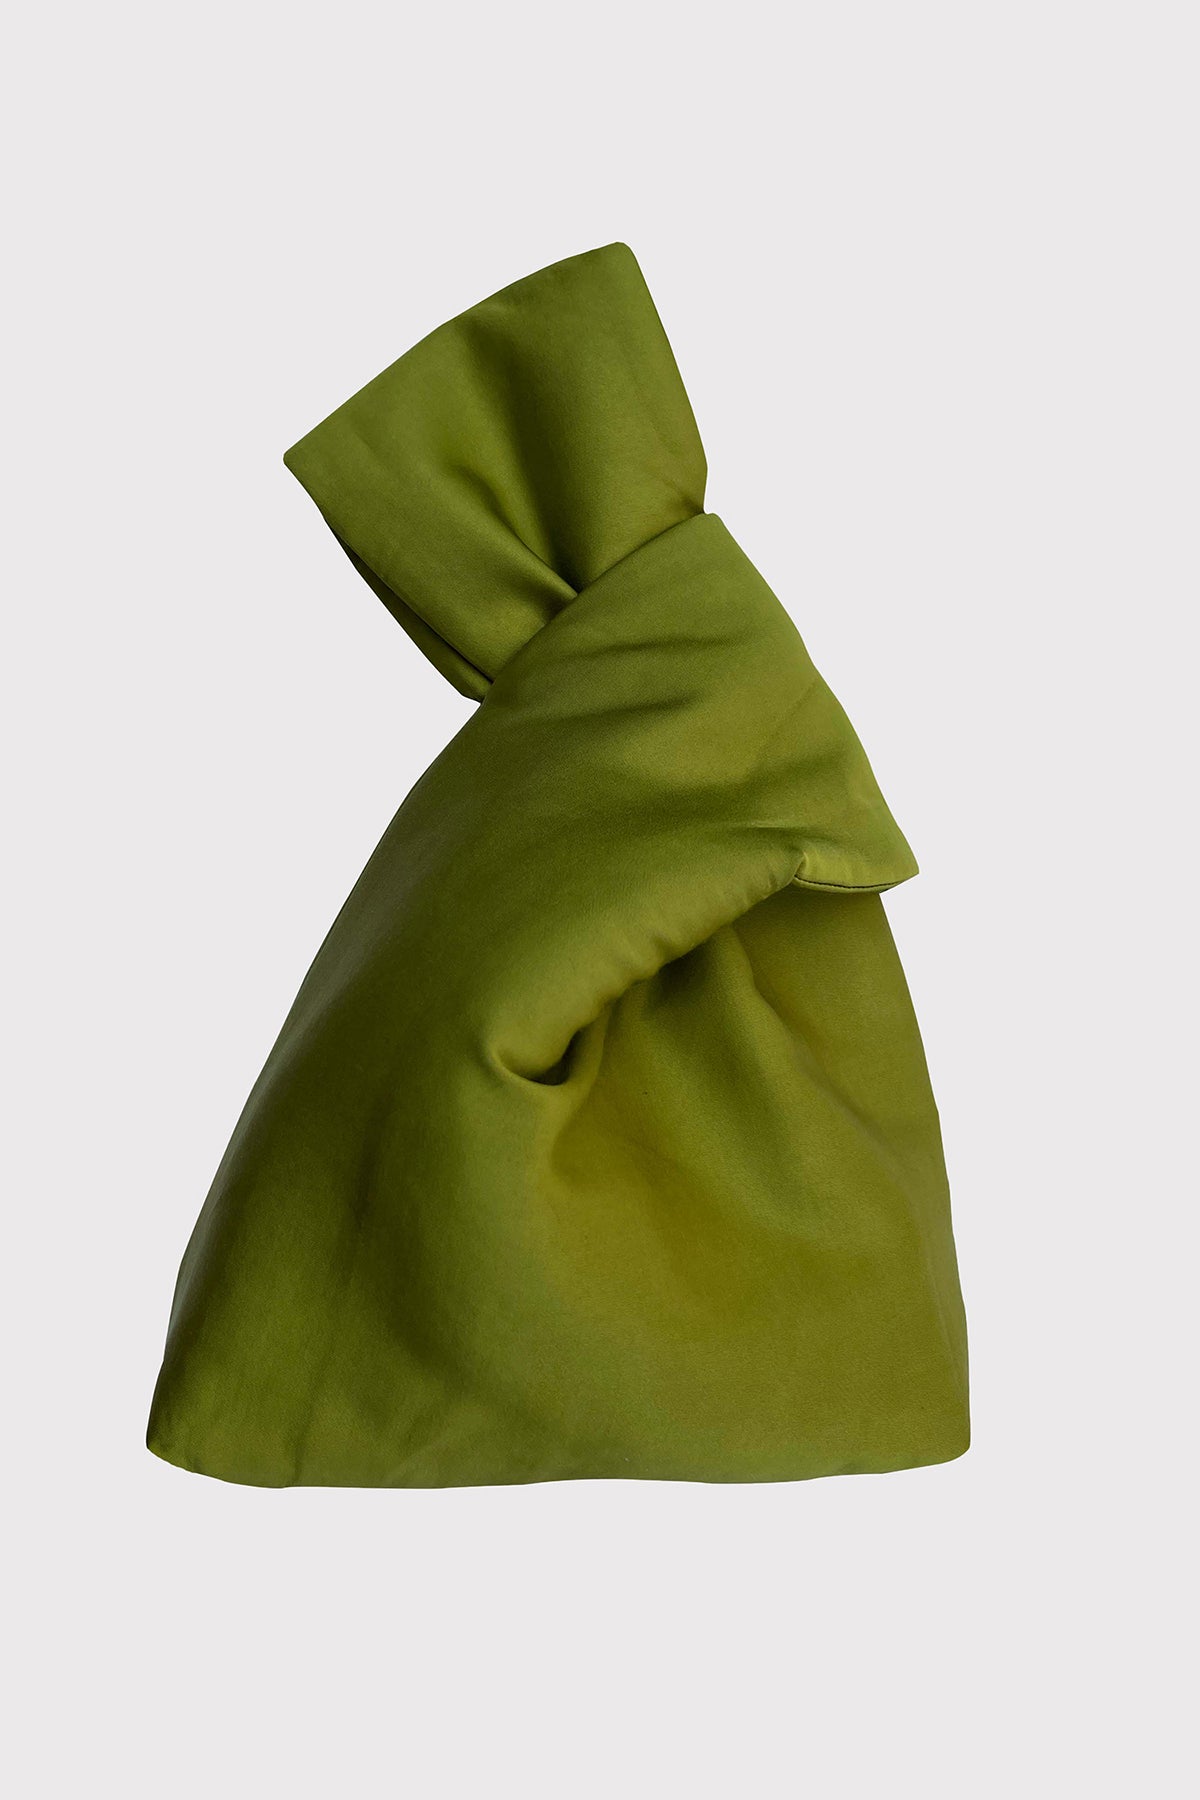 A green JENNY BAG on a white background, by Velvet by Jenny Graham.-25483385536705